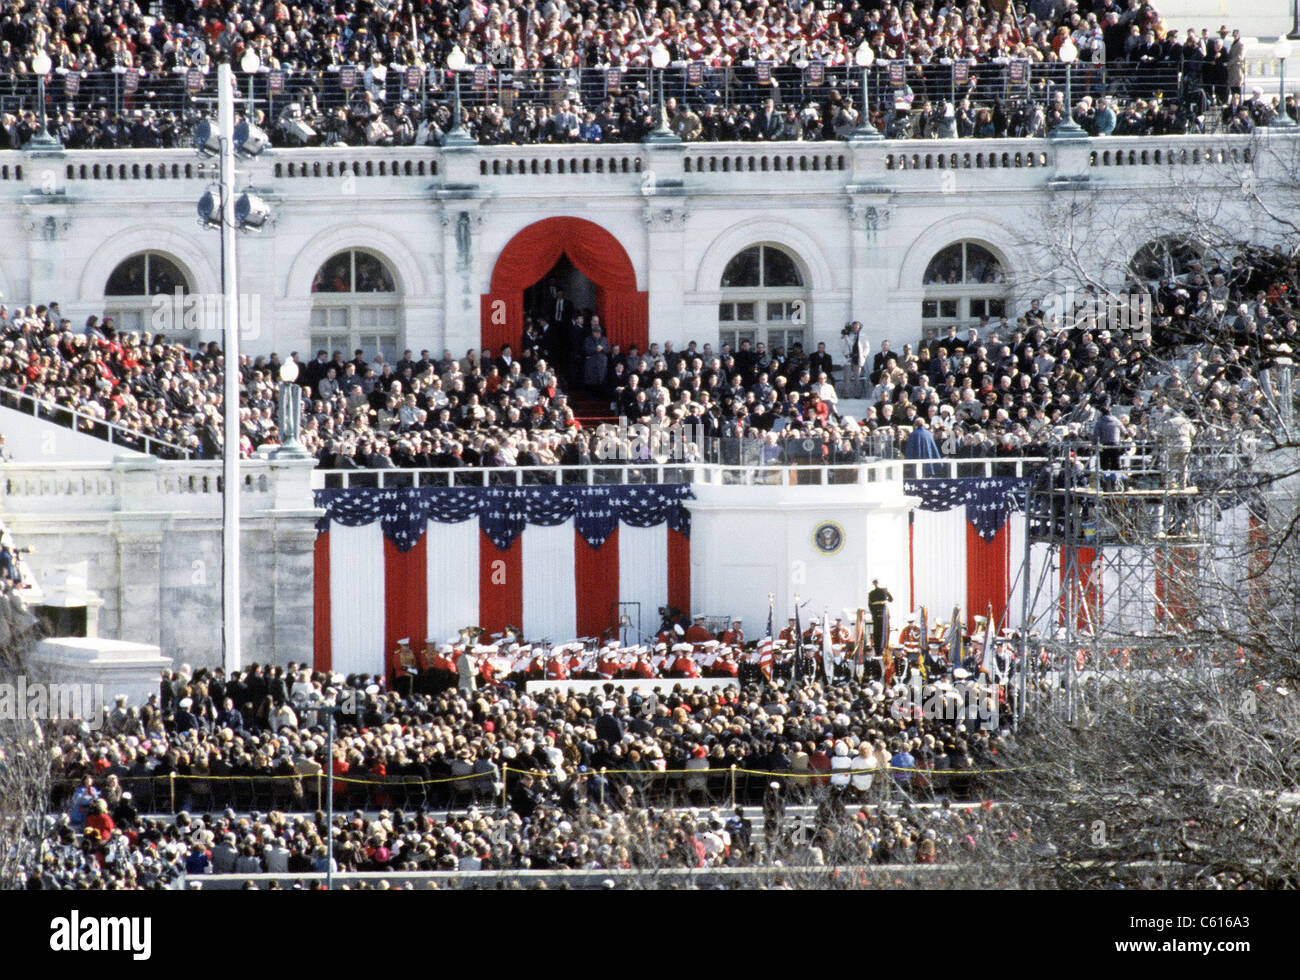 Première Inauguration de Bill Clinton. Aperçu de la foule et des décorations de l'ouest avant de la Capitol. Le 20 janvier 1993. Banque D'Images